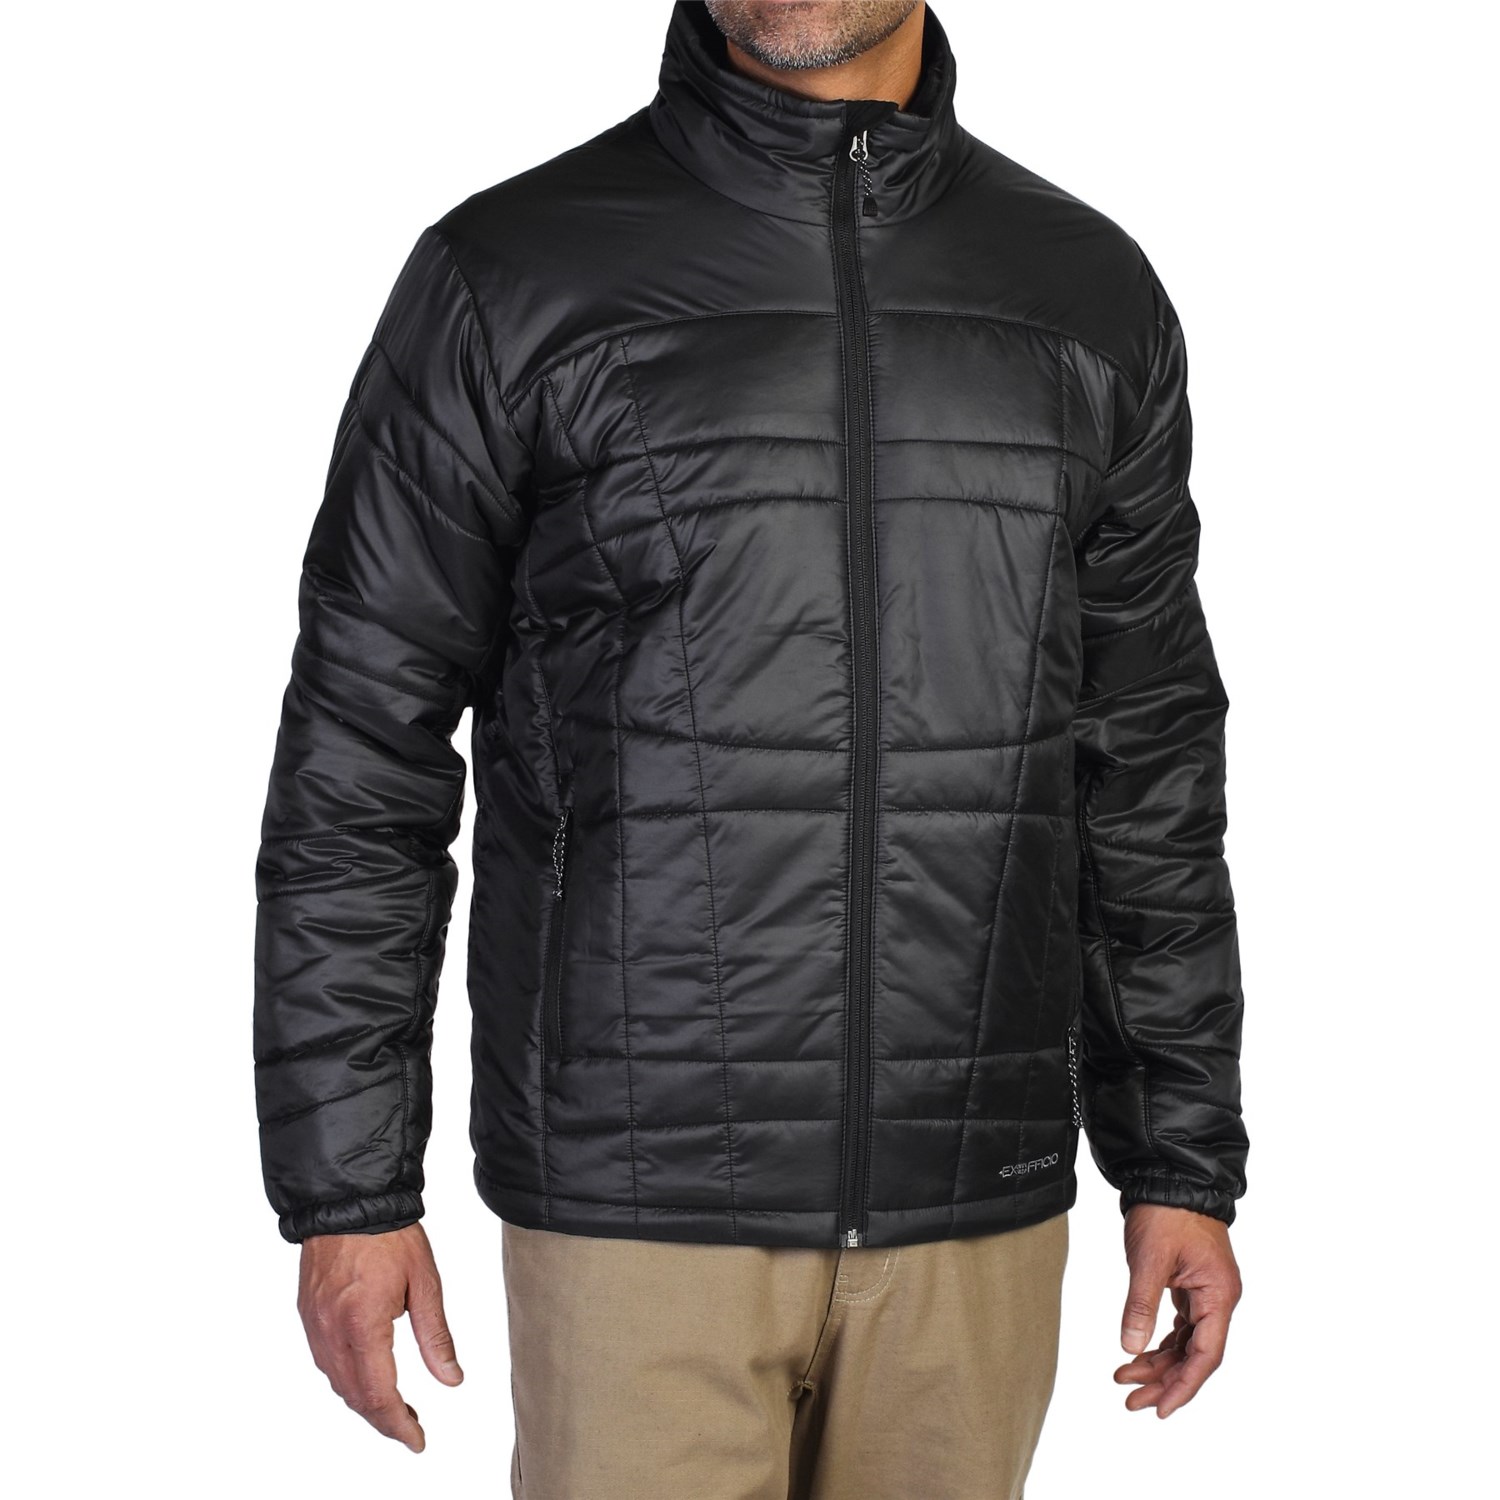 ExOfficio Storm Logic Jacket (For Men) - Save 66%